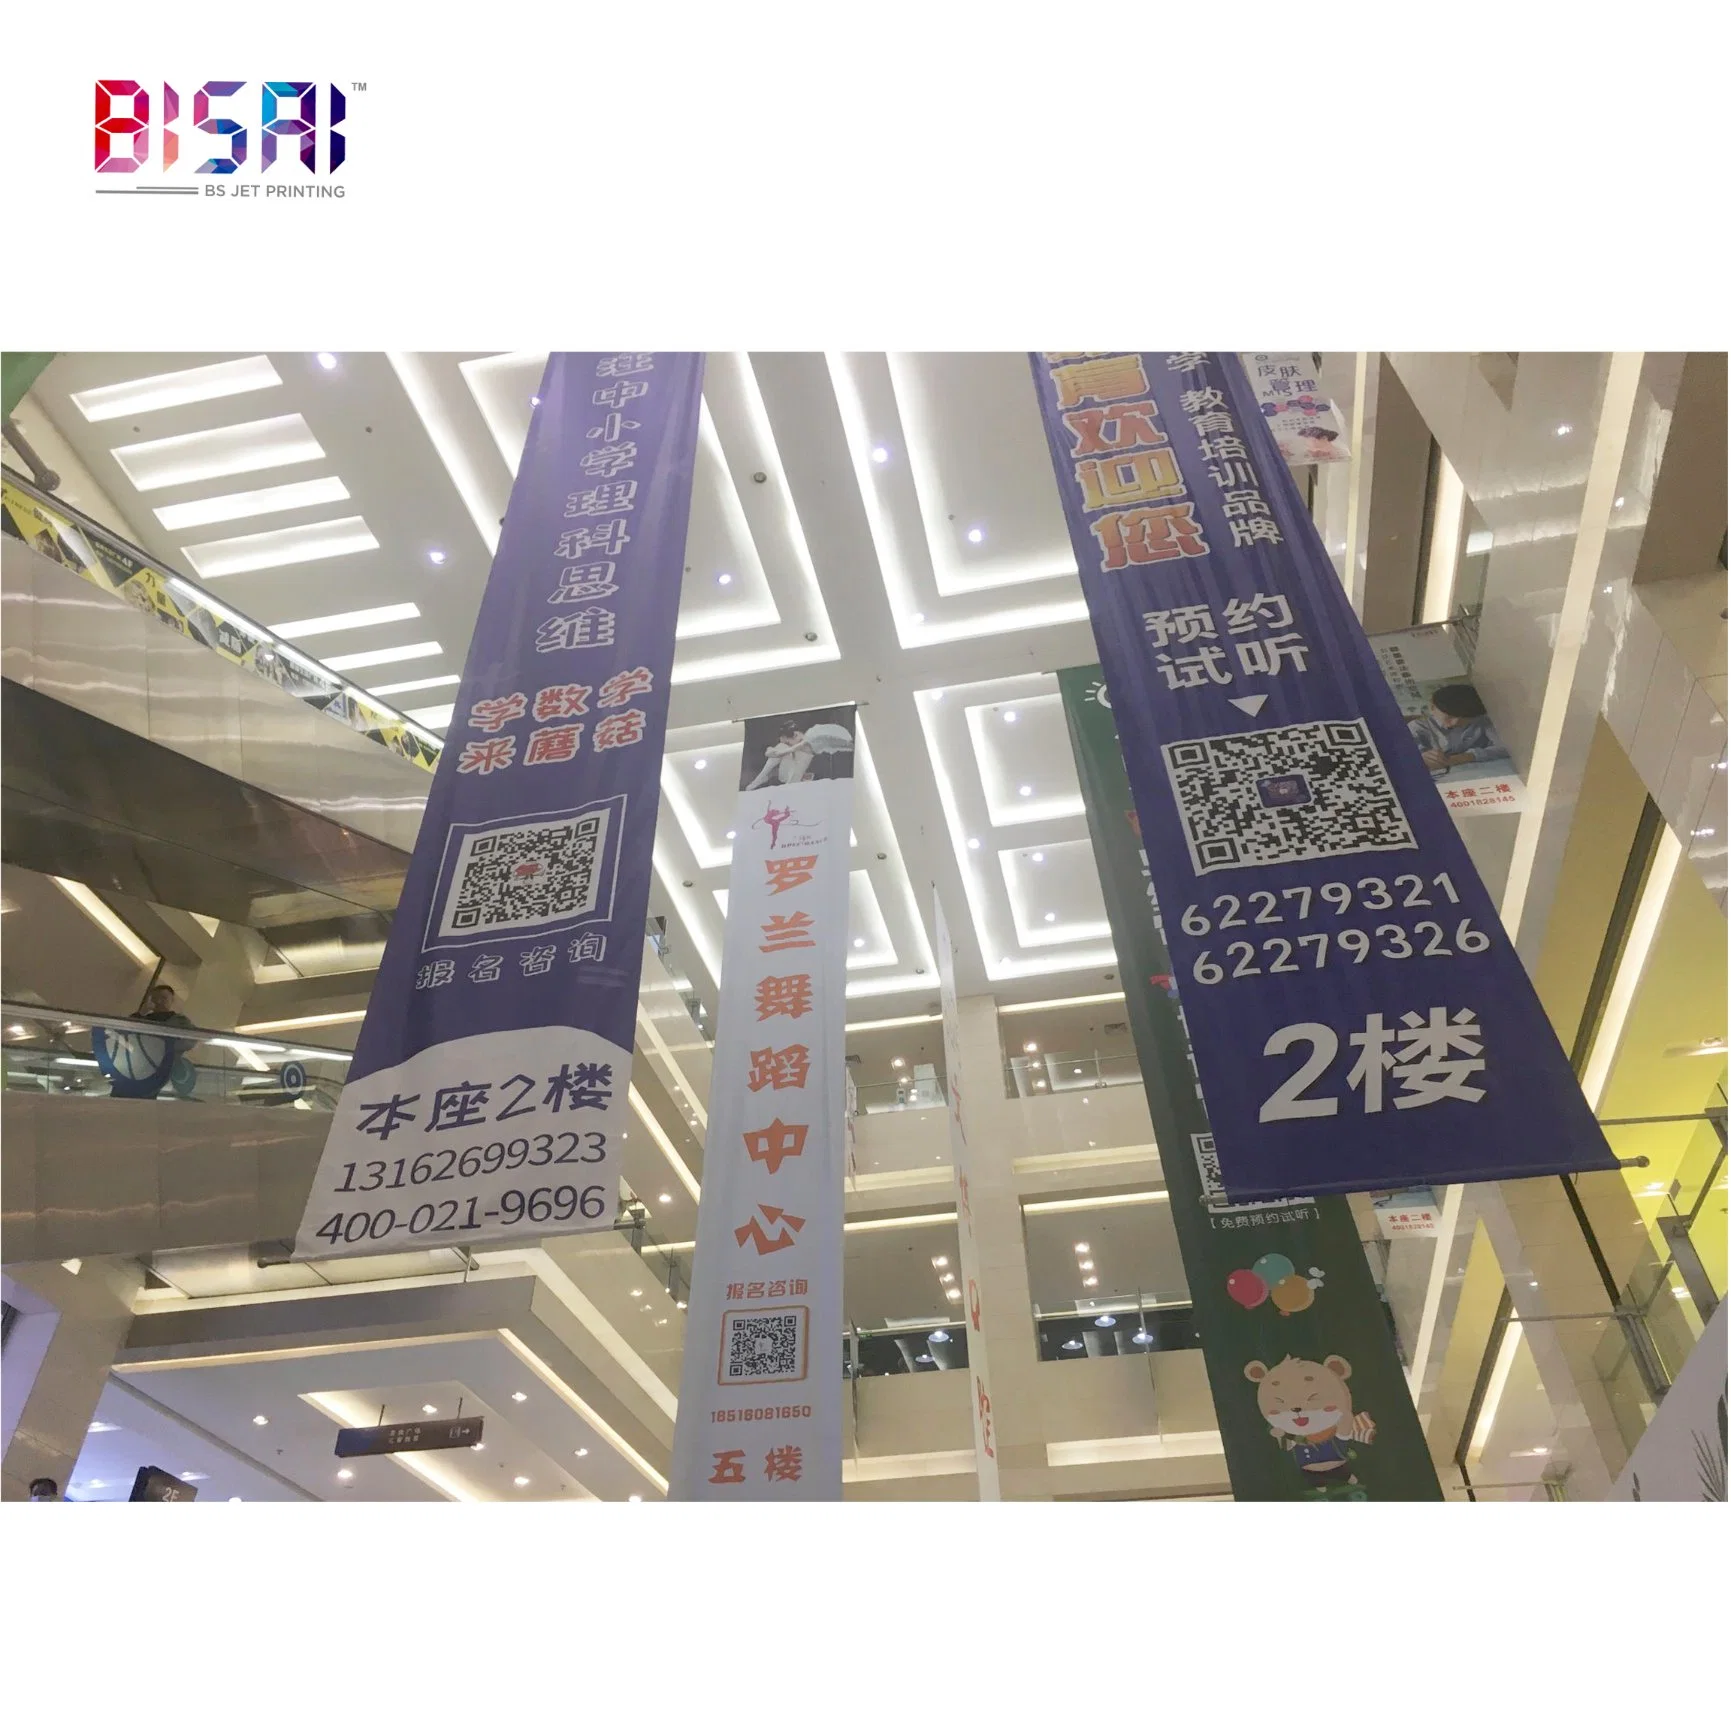 China Wholesale/Supplier Banner de vinilo de promoción de la publicidad personalizada impresión de Jardín Victoria Secret orgullo la bandera del país de lona de PVC de la playa de la compañía de plumas Flex banderas